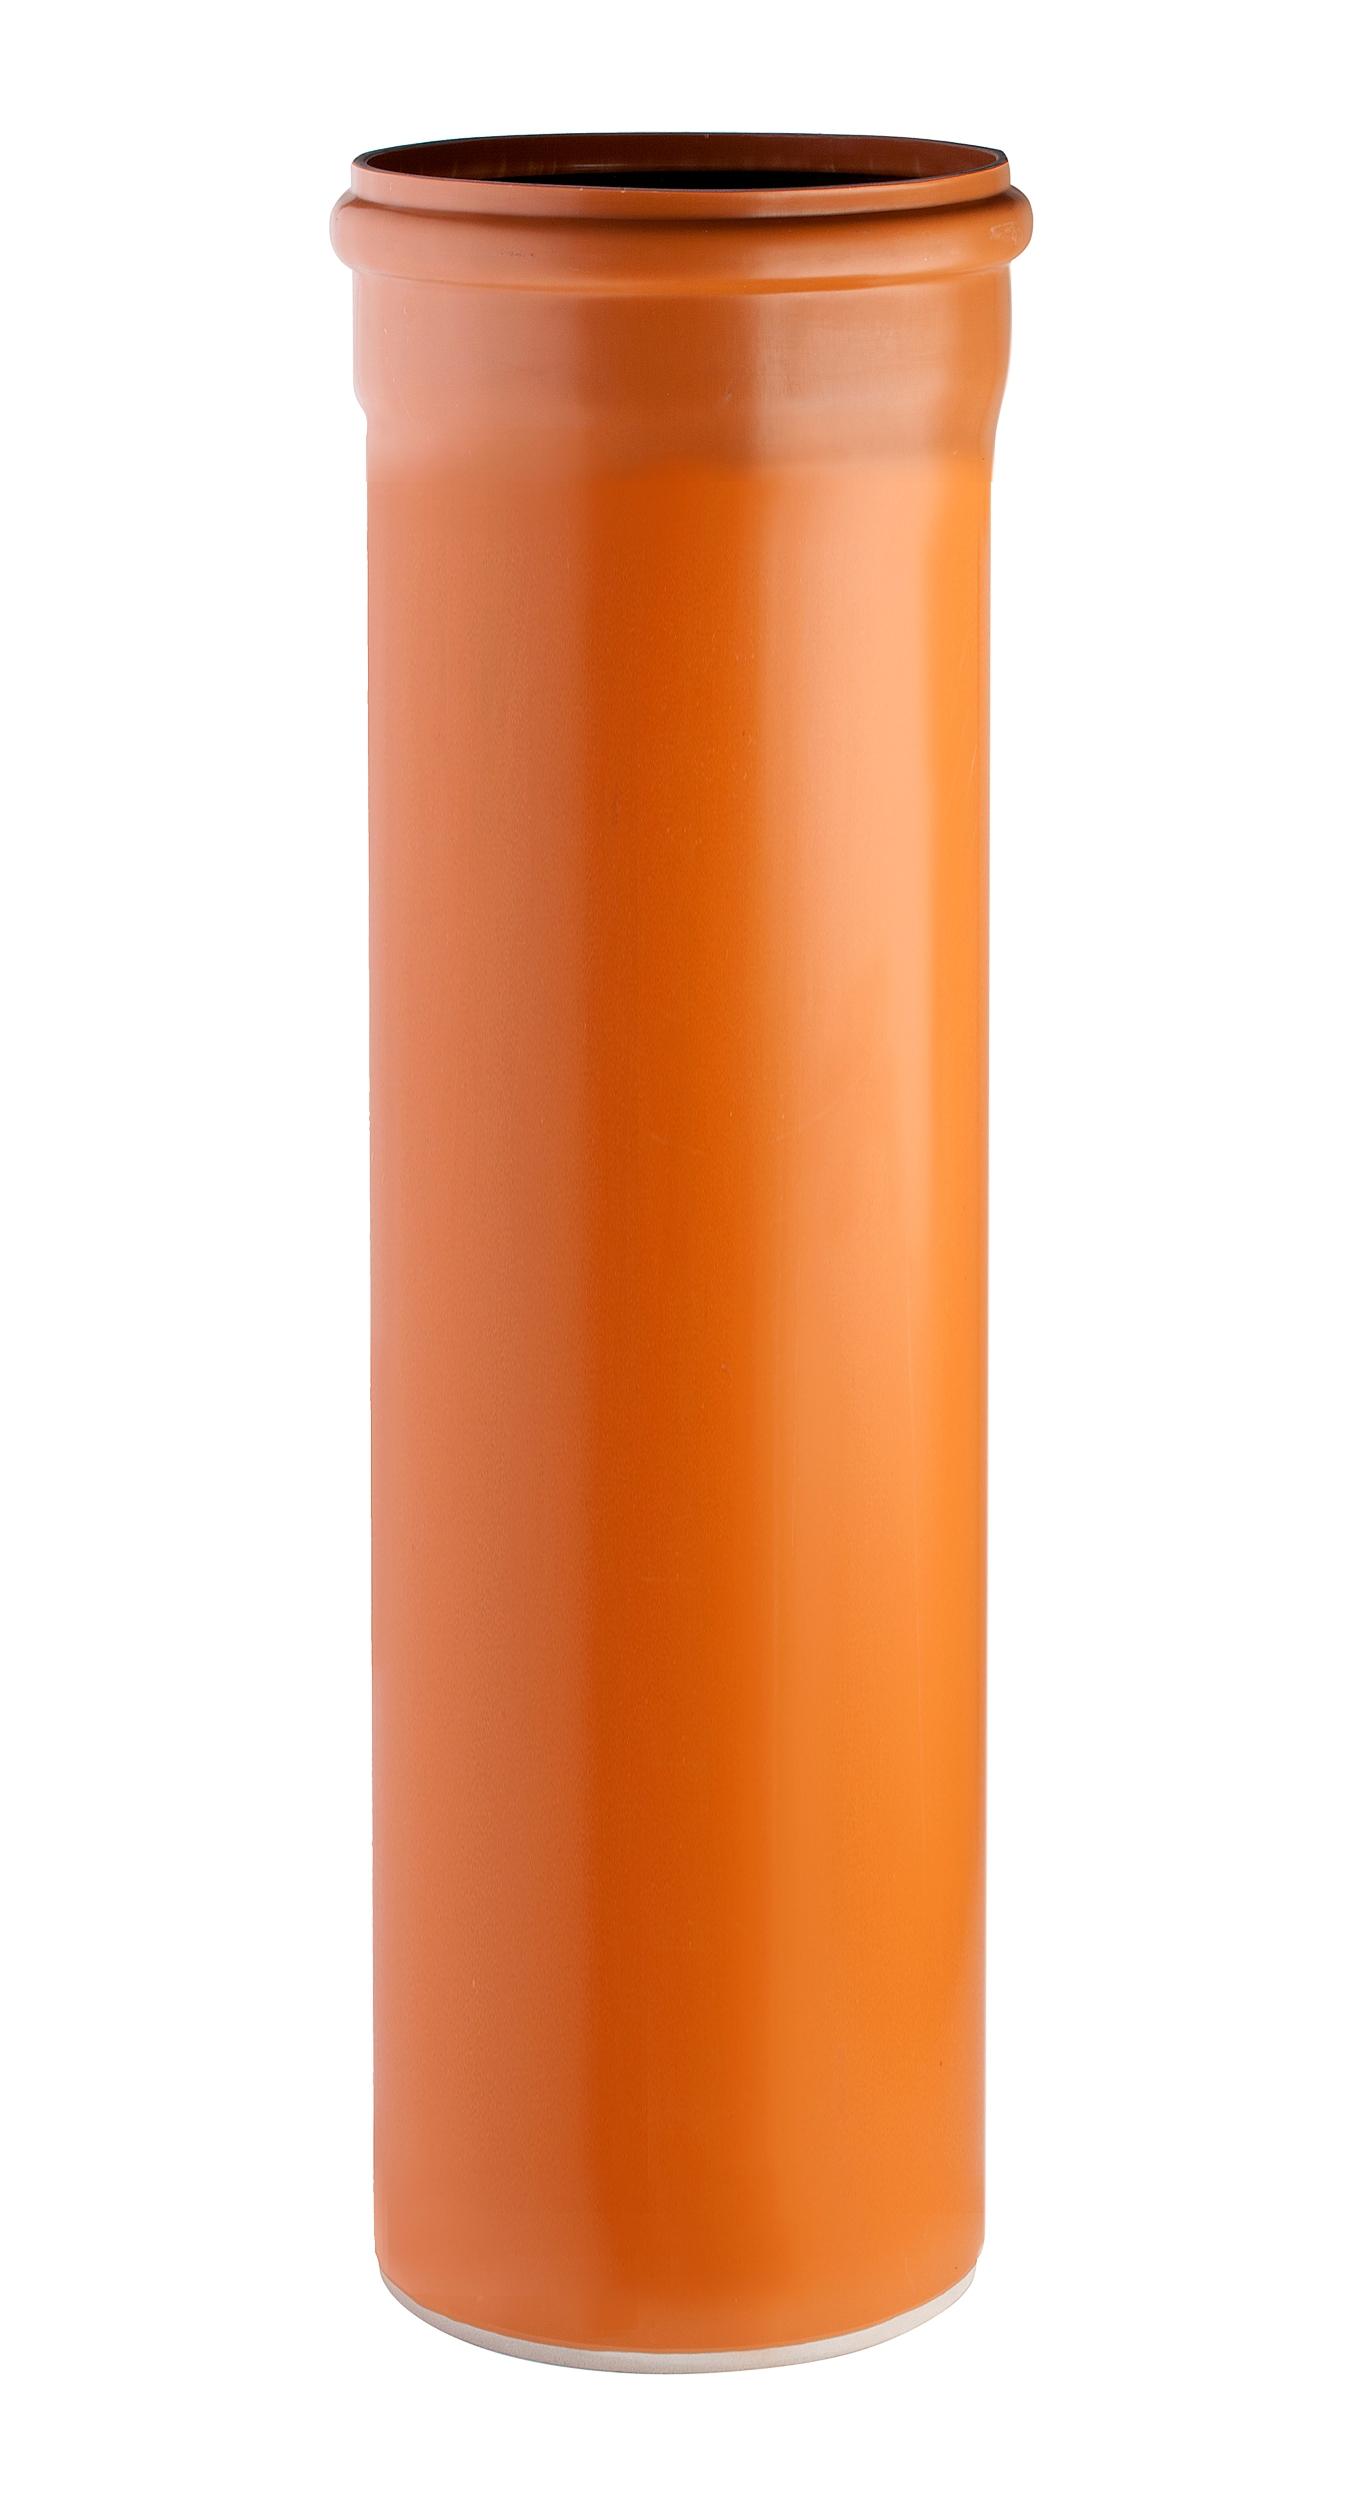 Rohrelement Kunststoff Ø315mm 1000 mm lang